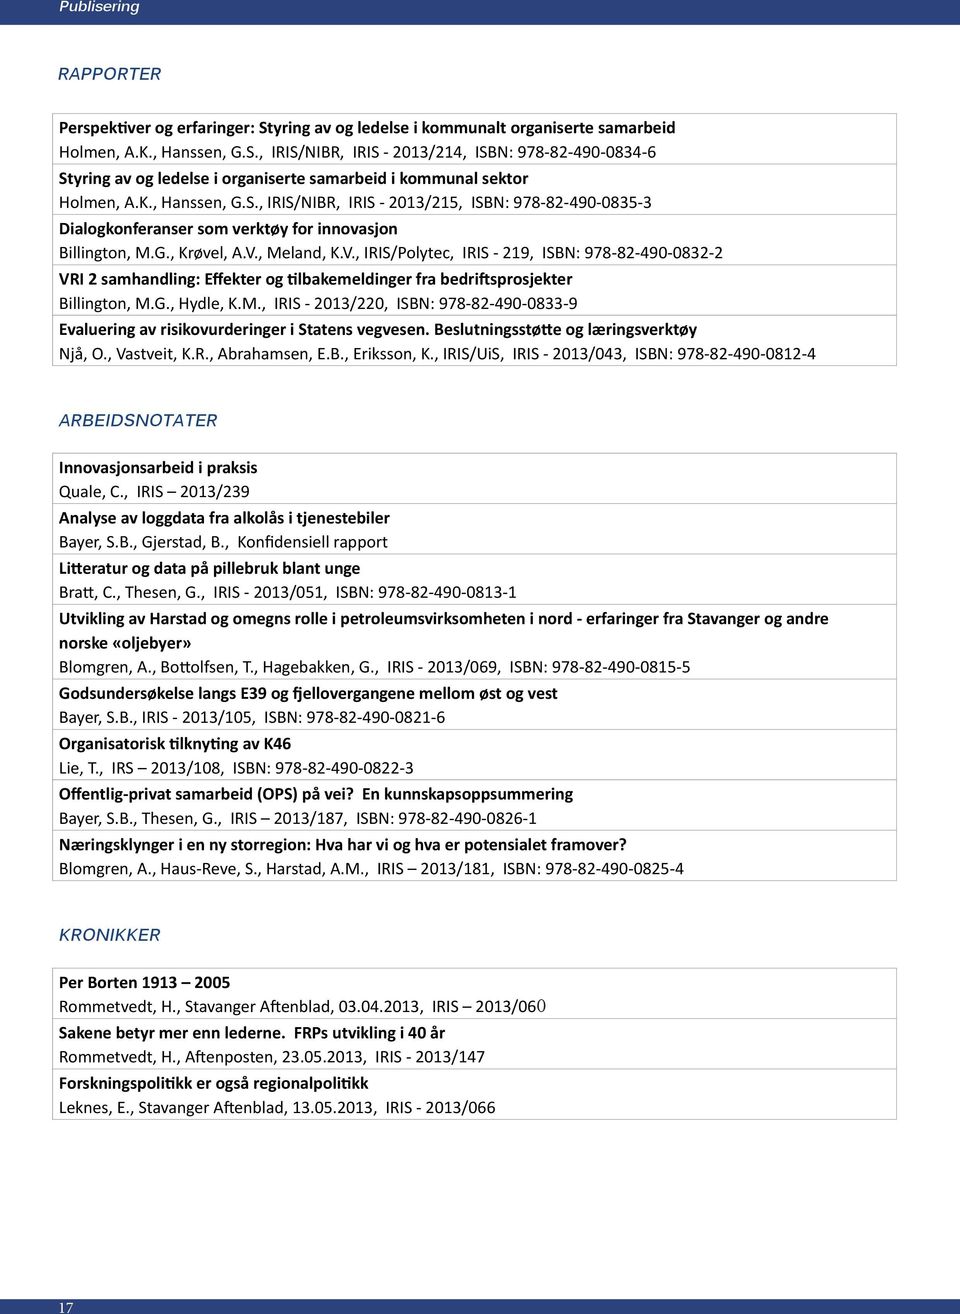 , Meland, K.V., IRIS/Polytec, IRIS - 219, ISBN: 978-82-490-0832-2 VRI 2 samhandling: Effekter og tilbakemeldinger fra bedriftsprosjekter Billington, M.G., Hydle, K.M., IRIS - 2013/220, ISBN: 978-82-490-0833-9 Evaluering av risikovurderinger i Statens vegvesen.